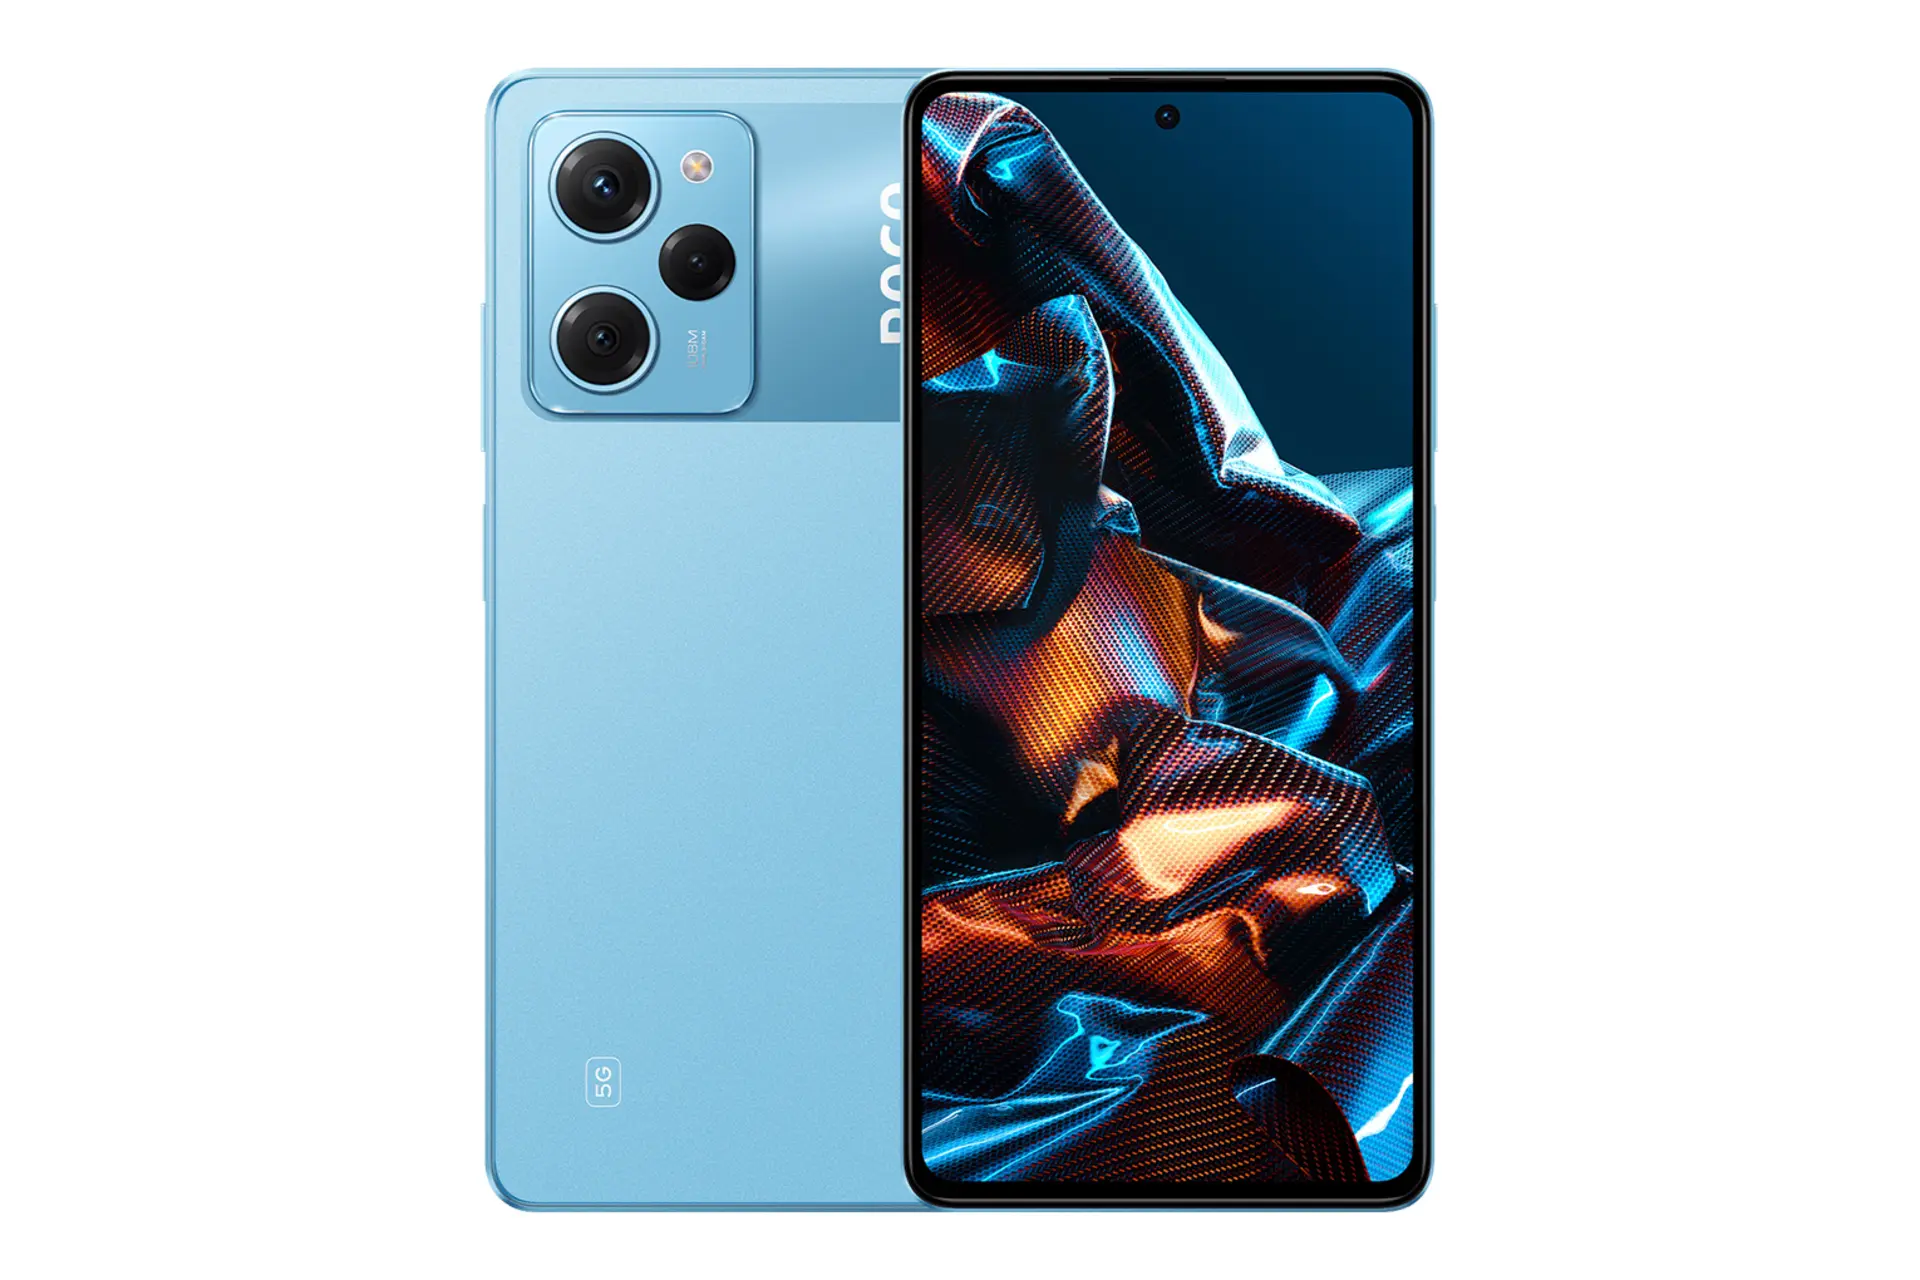 نمای کلی گوشی موبایل پوکو X5 پرو شیائومی / Xiaomi Poco X5 Pro با نمایشگر روشن و نمایش لوگو و دوربین در پنل پشت رنگ آبی